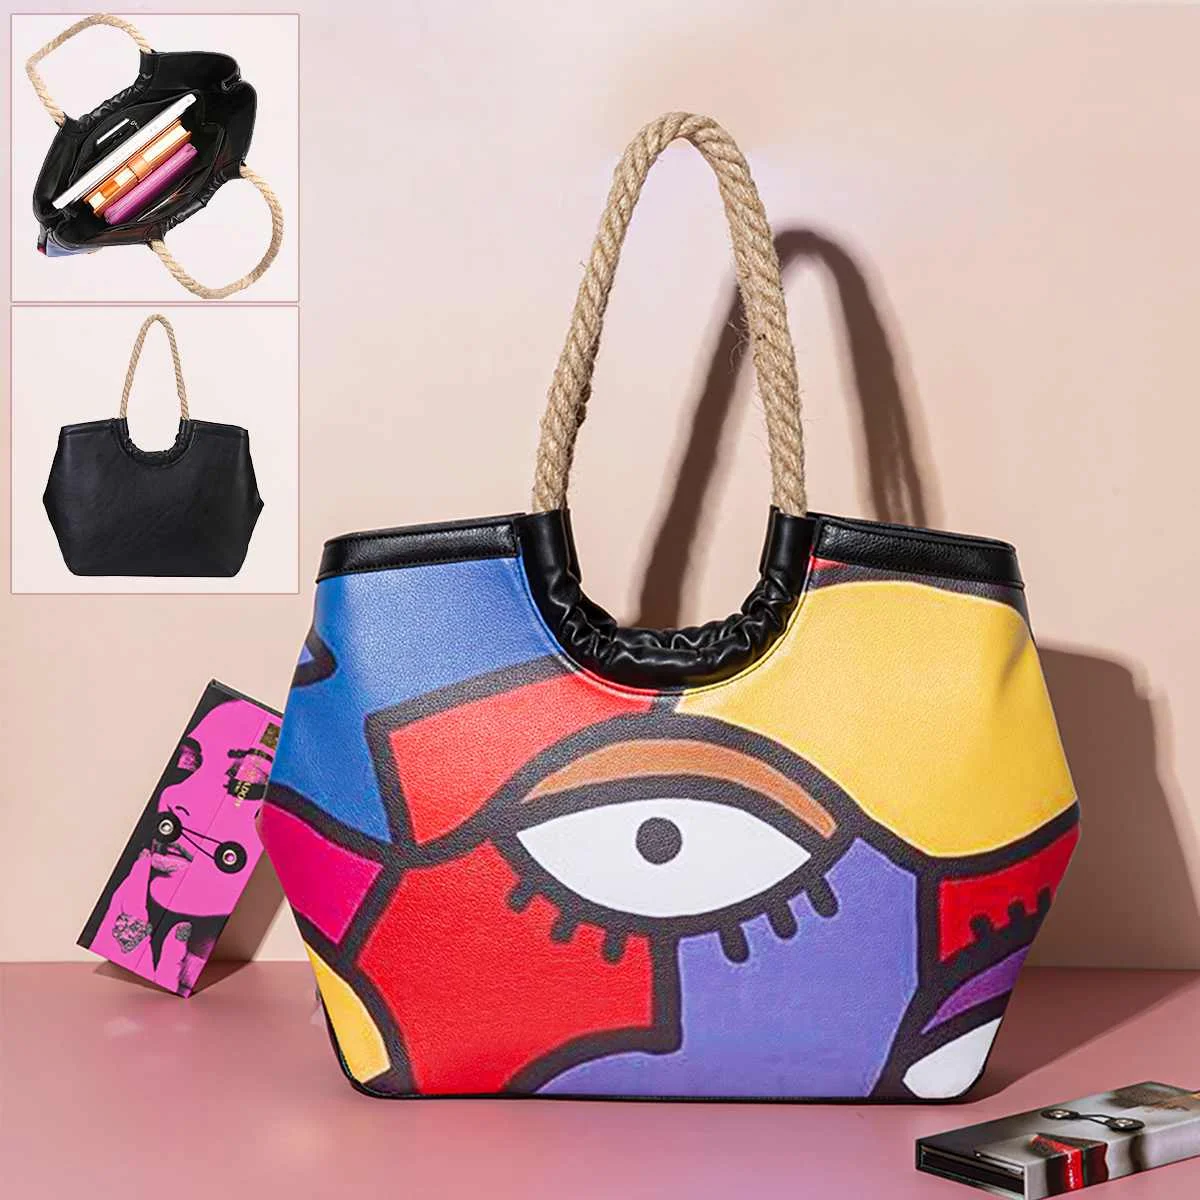 

Индивидуальная Женская сумочка, цветная Соломенная пляжная сумка-тоут с абстрактным рисунком, Вместительная дорожная косметическая сумка ...